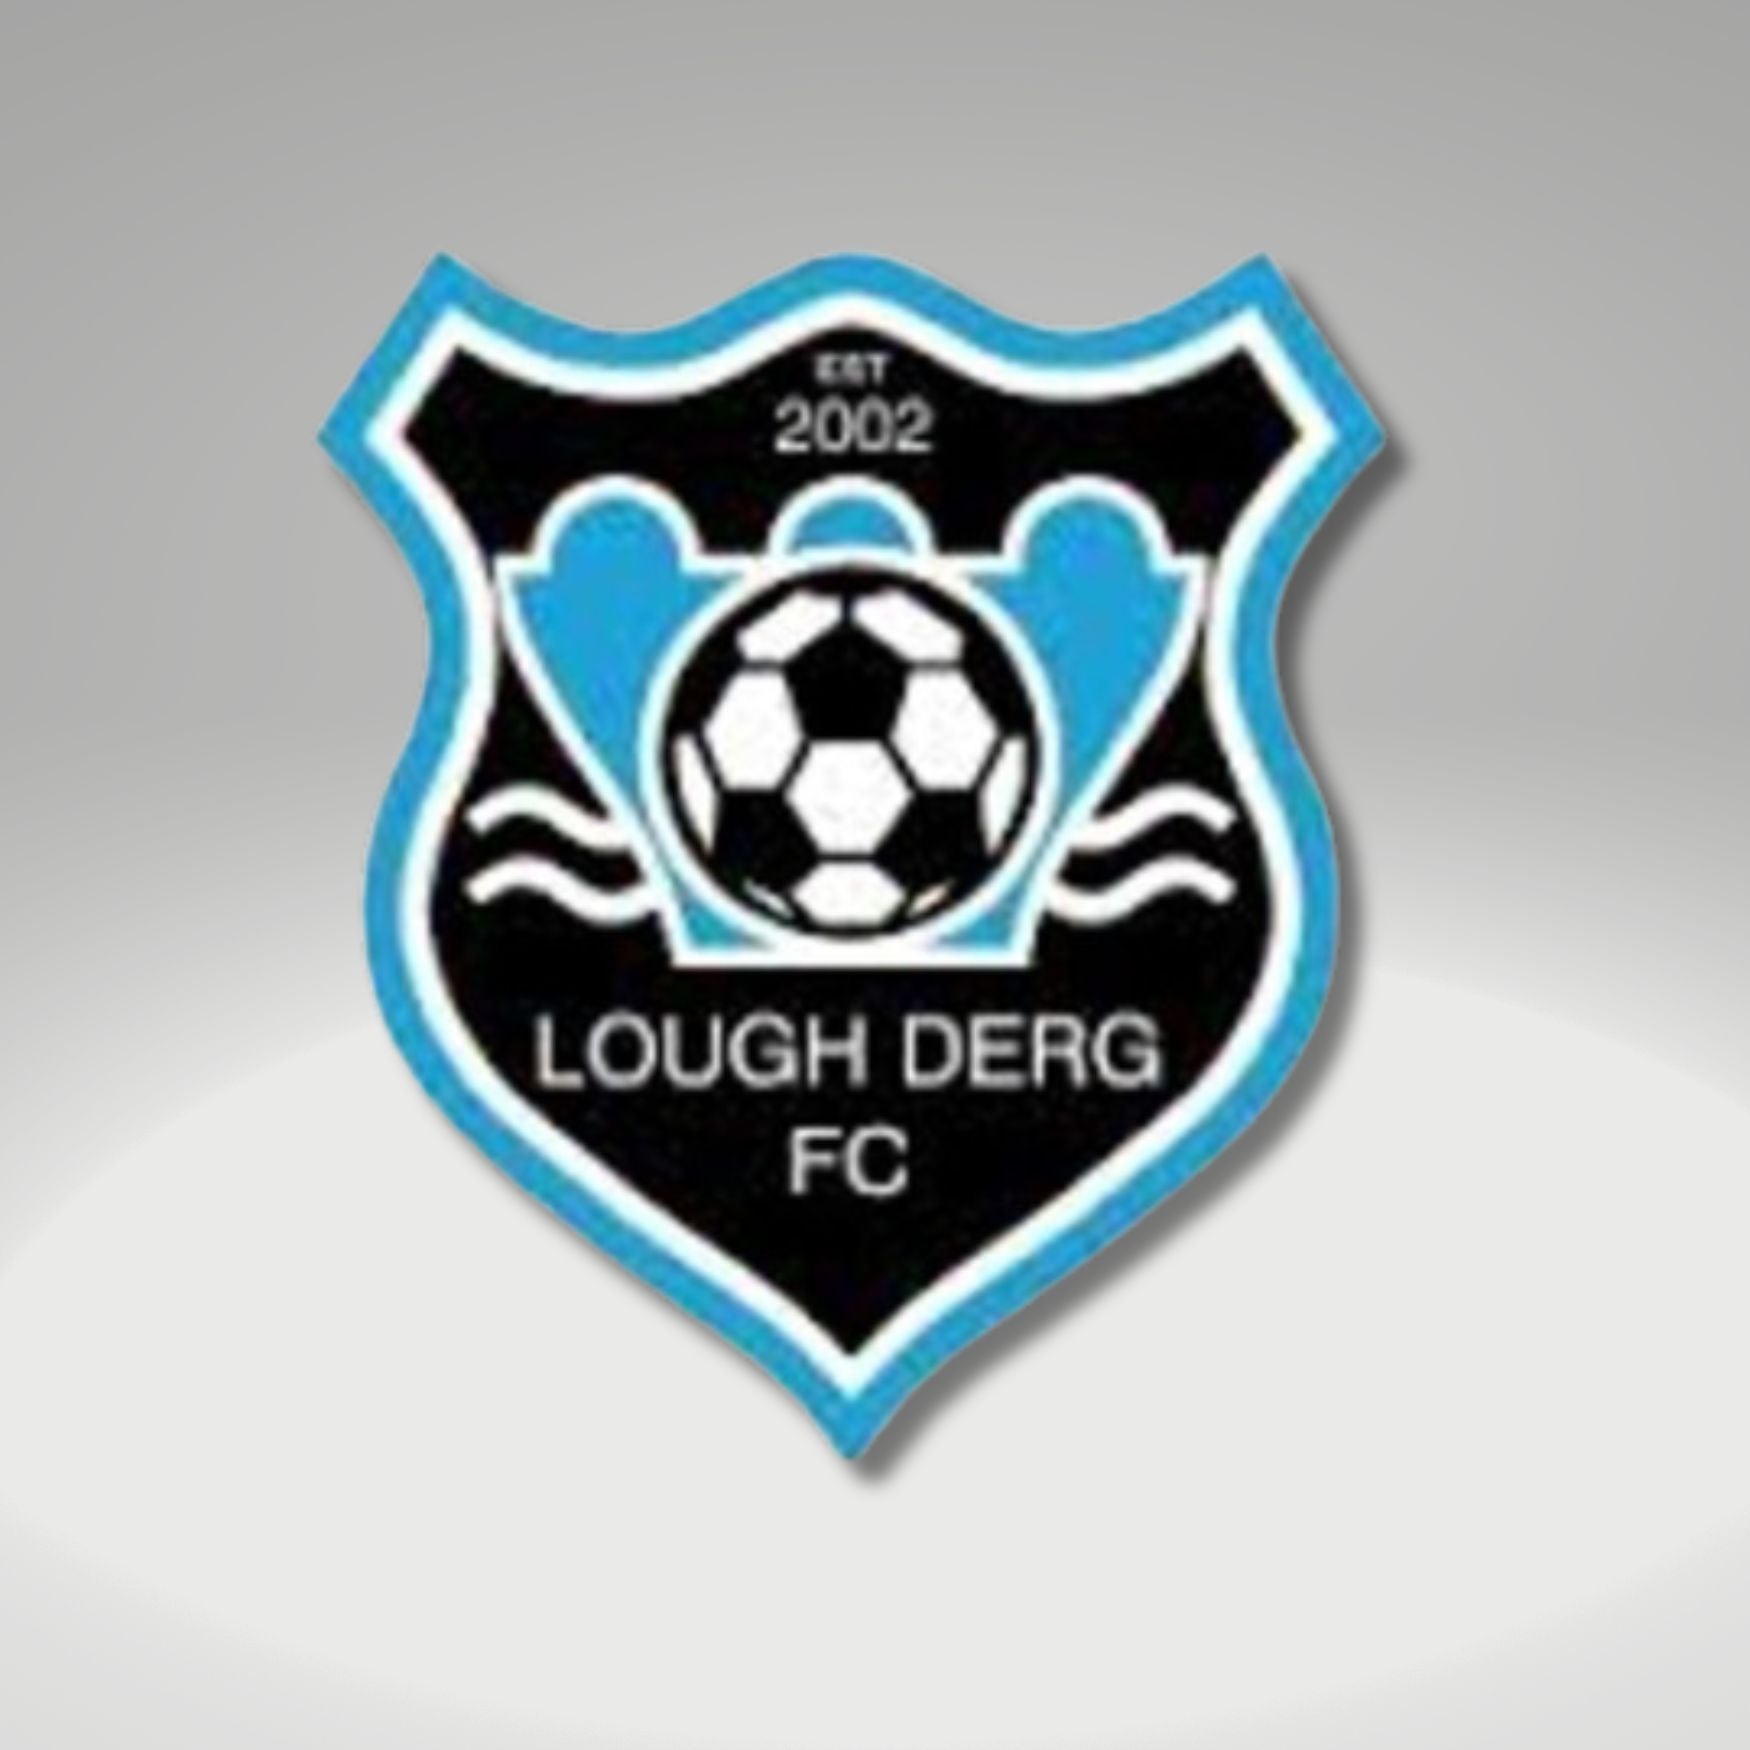 ClubShop - Soccer - Lough Derg FC